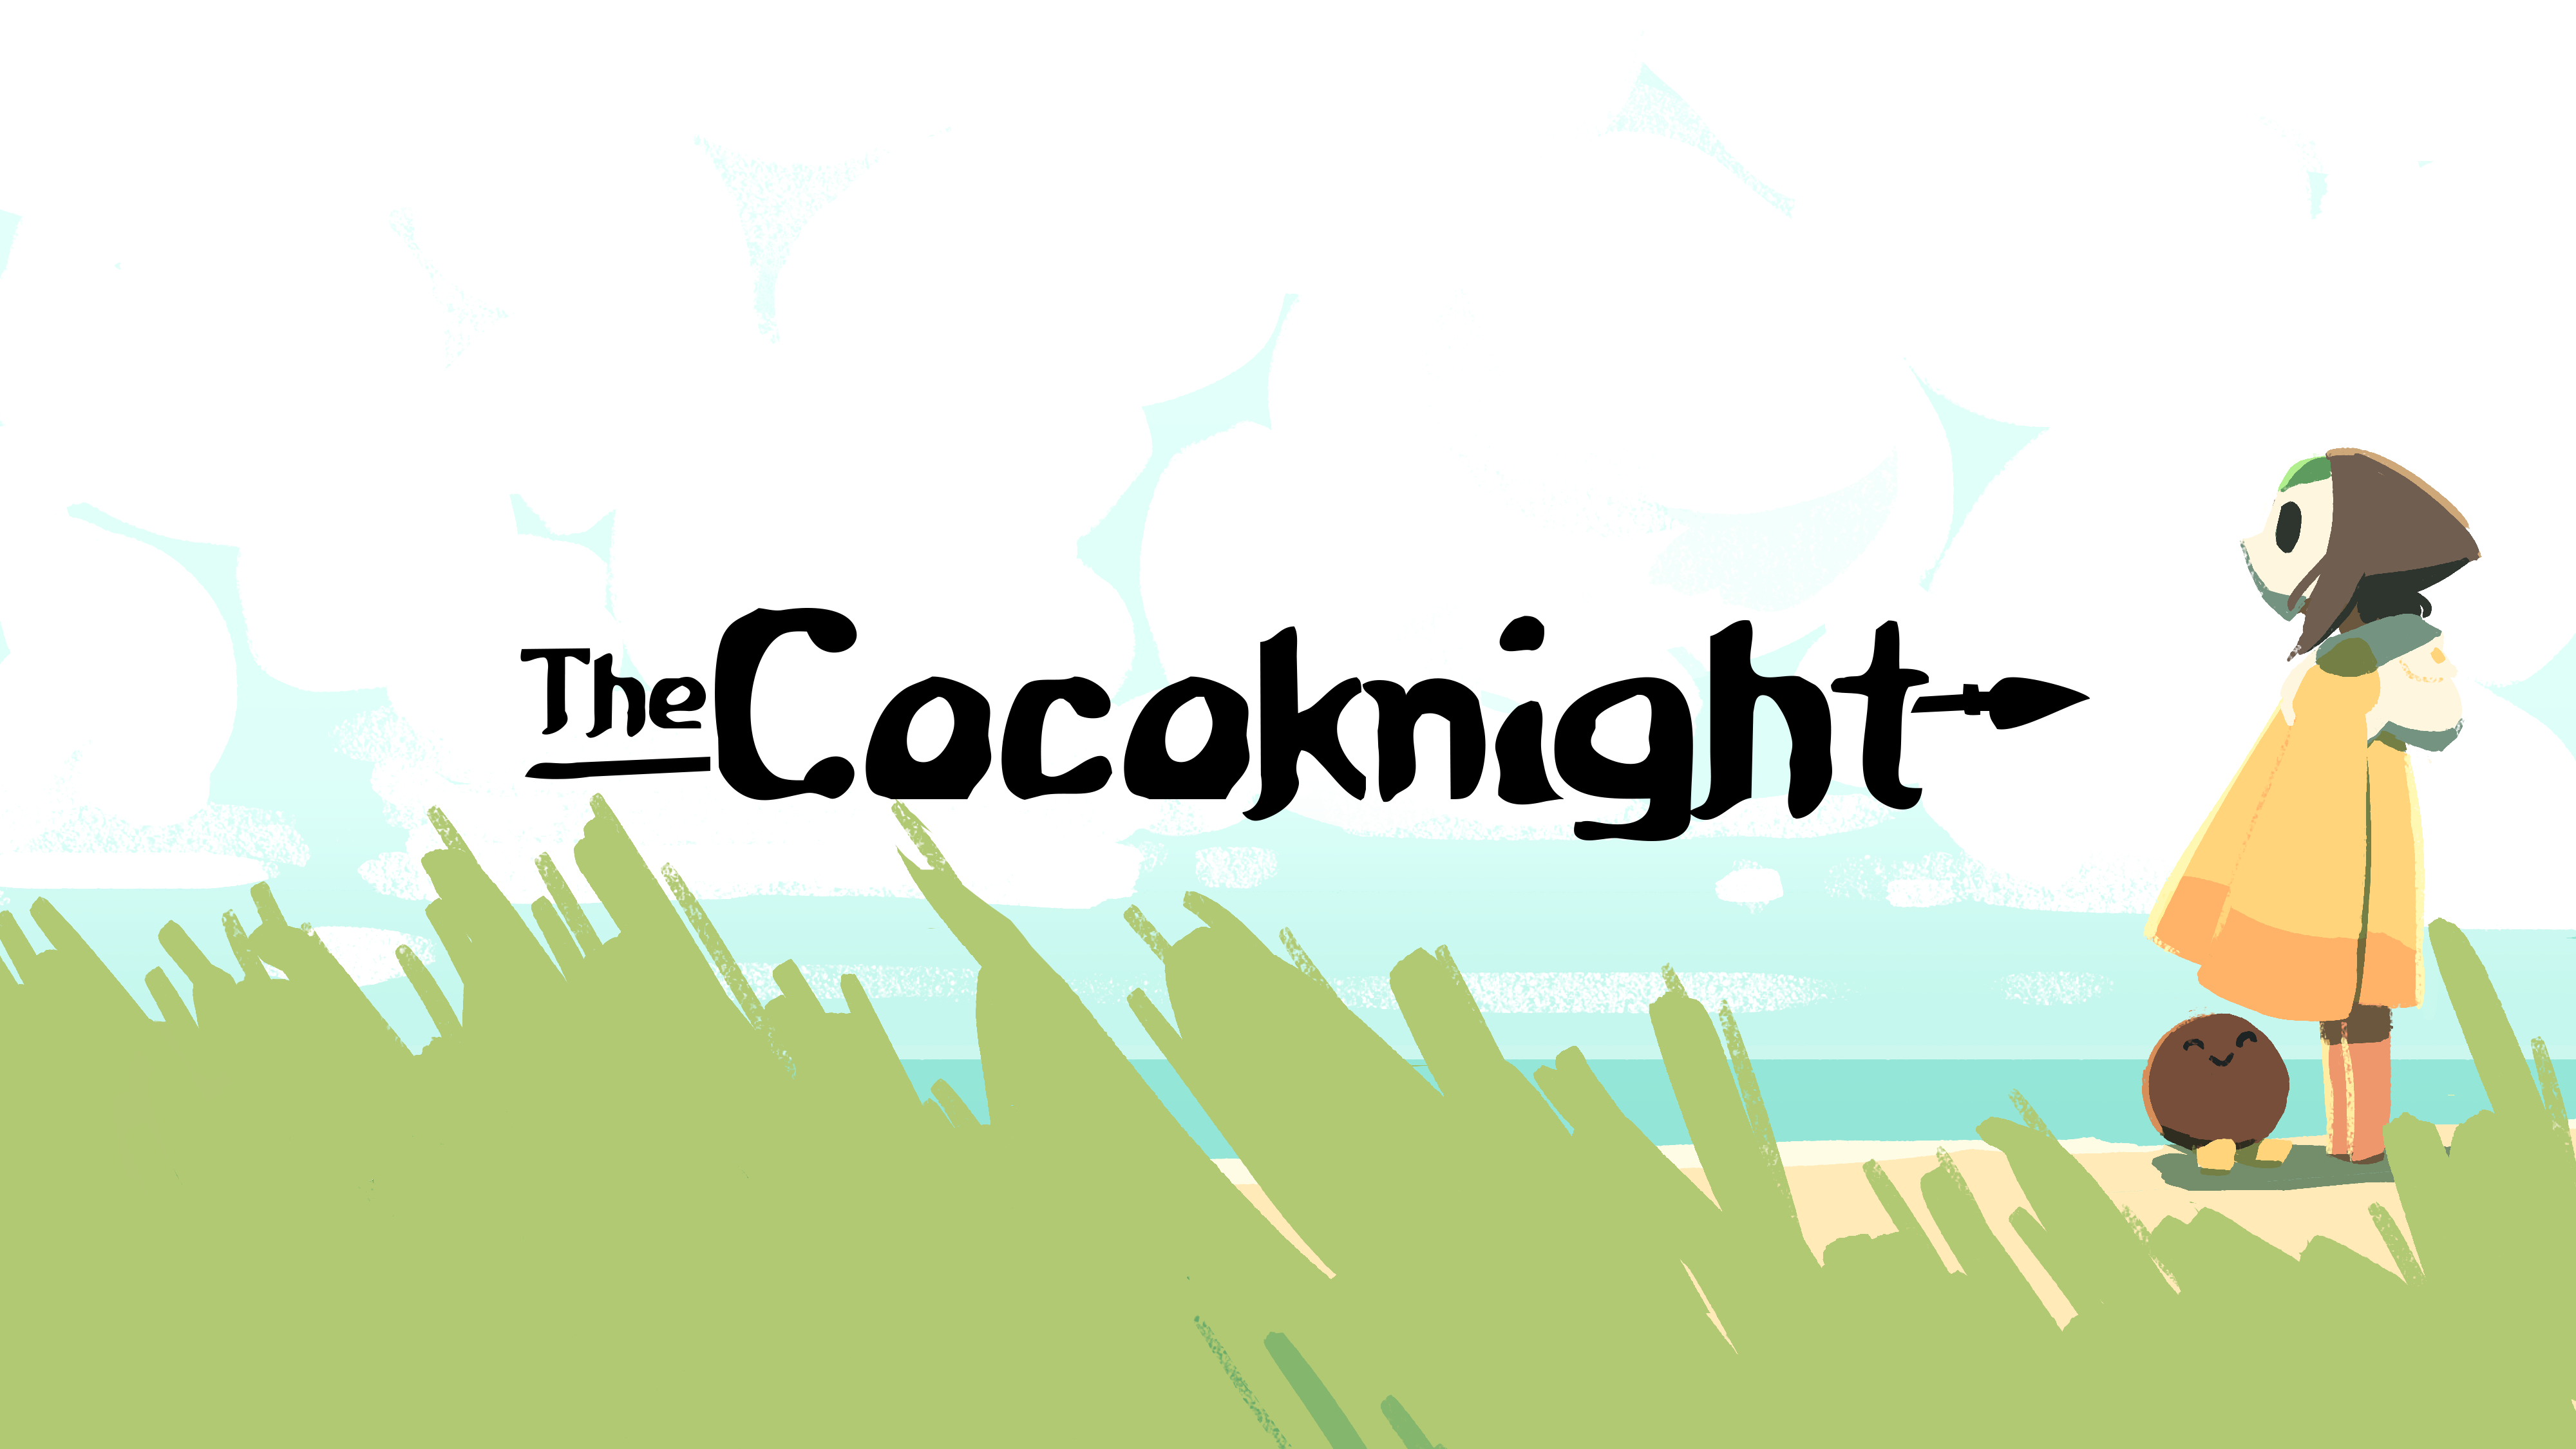 The Cocoknight